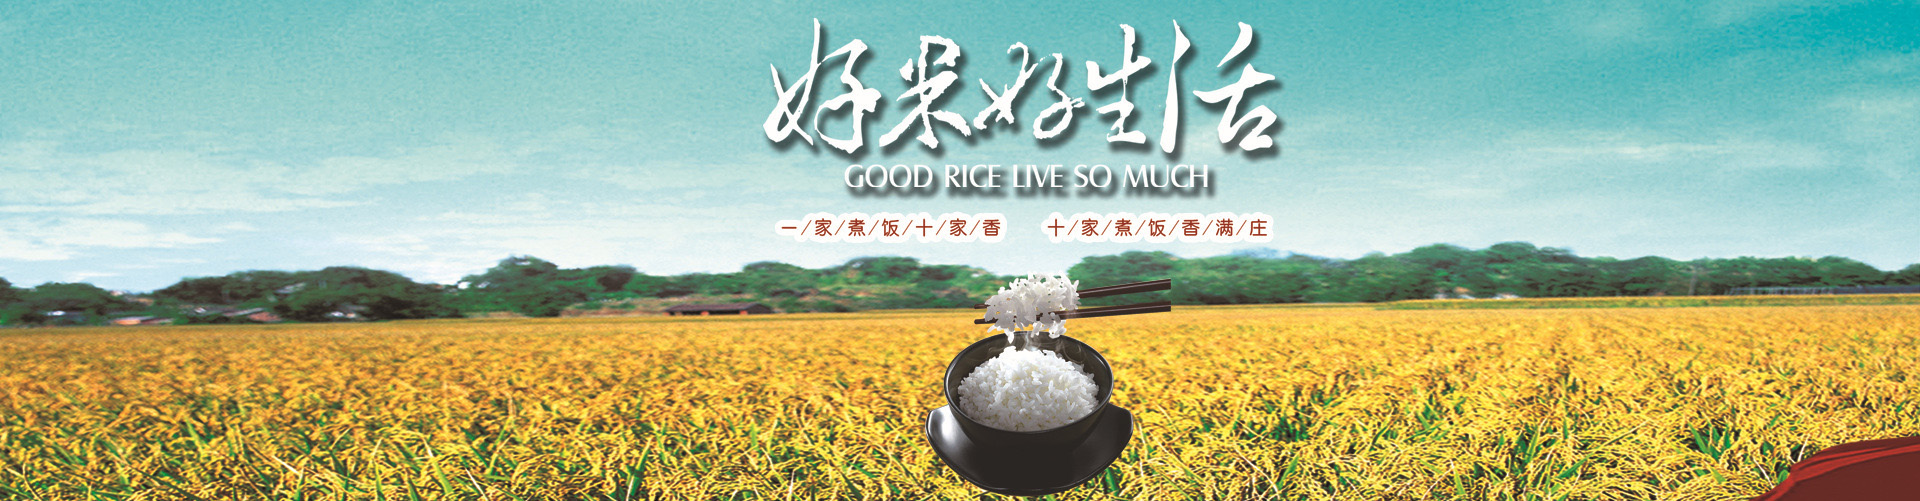 五常**稻花香米促销厂家 五常稻米之乡优质**稻花香